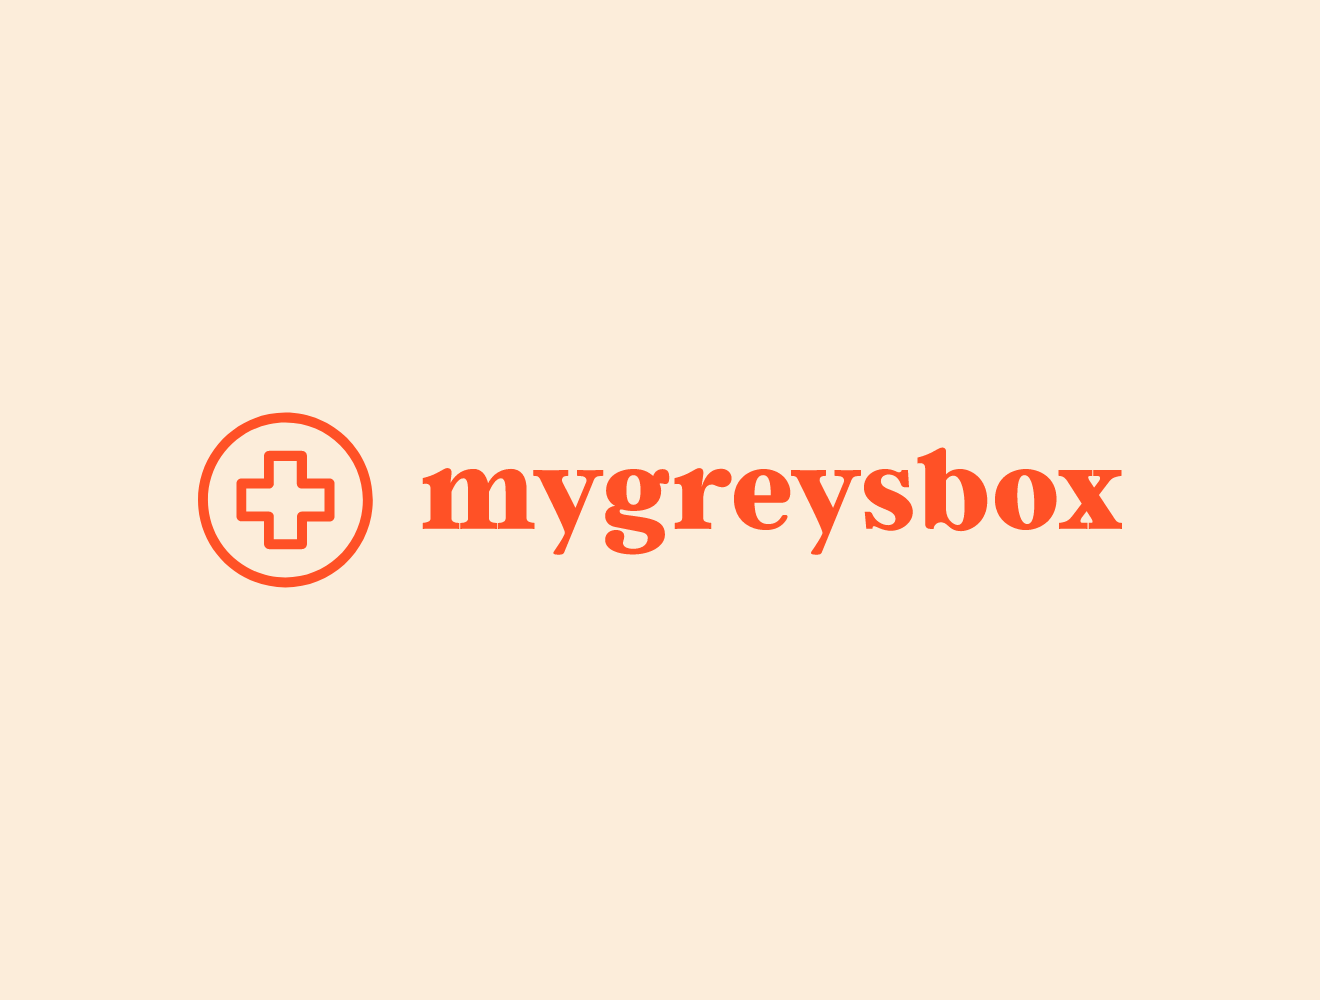 Mygreysbox